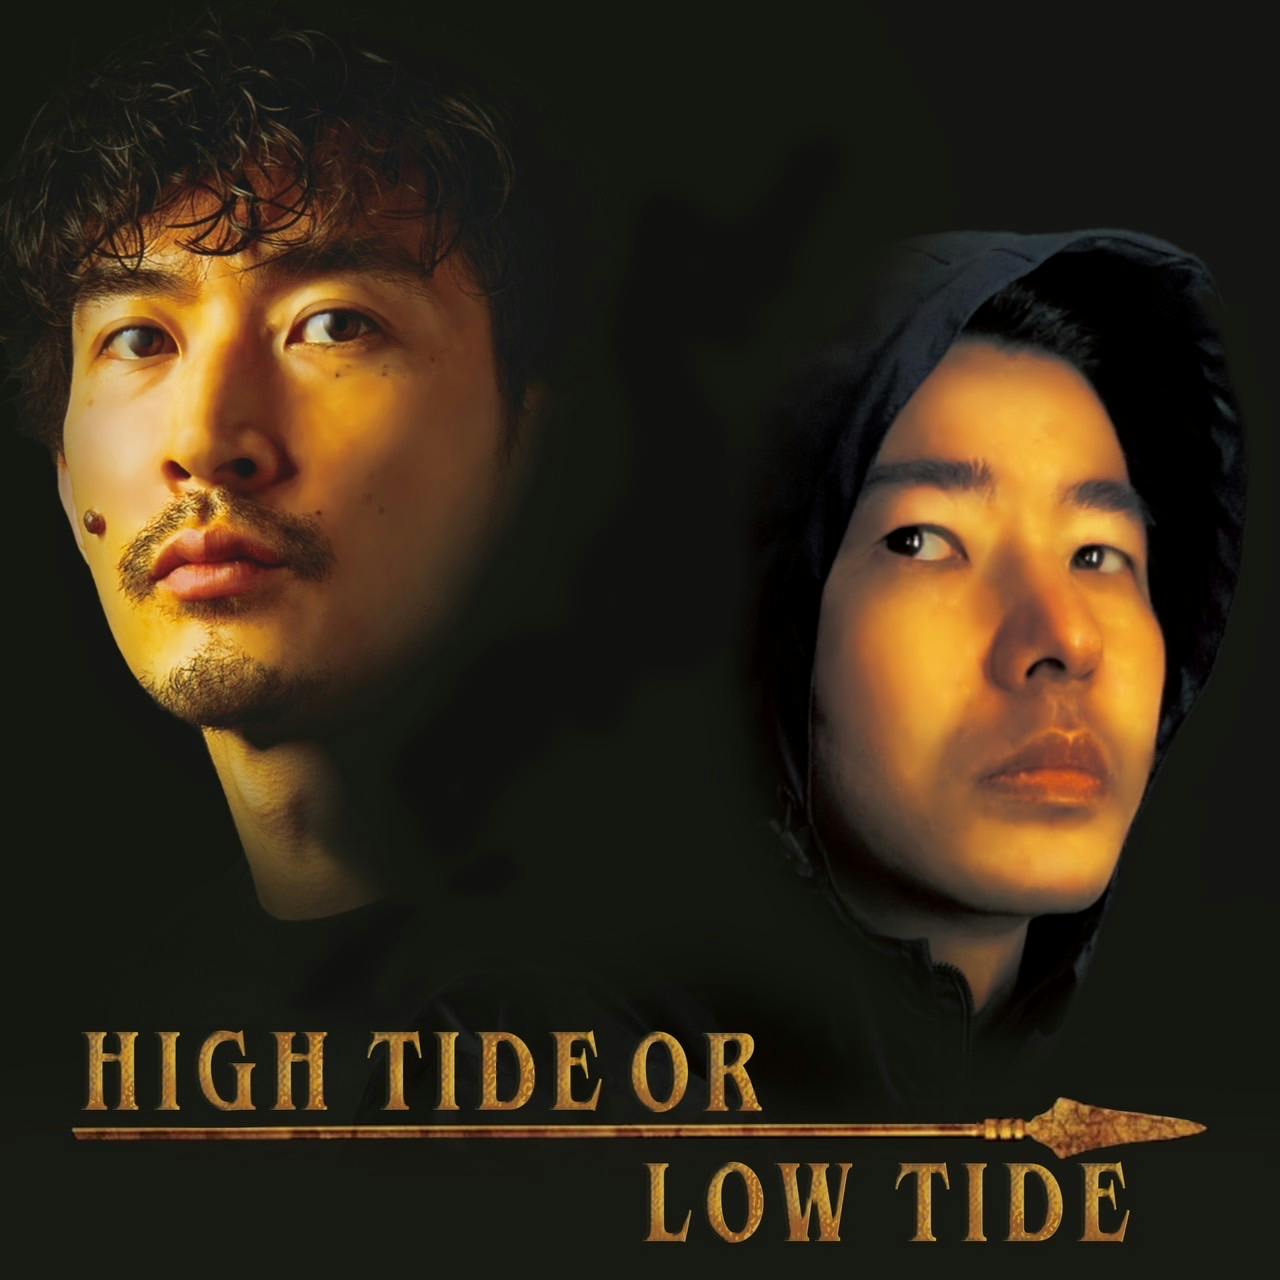 Hibikilla - High tide or low tide feat. HAIIRO DE ROSSI